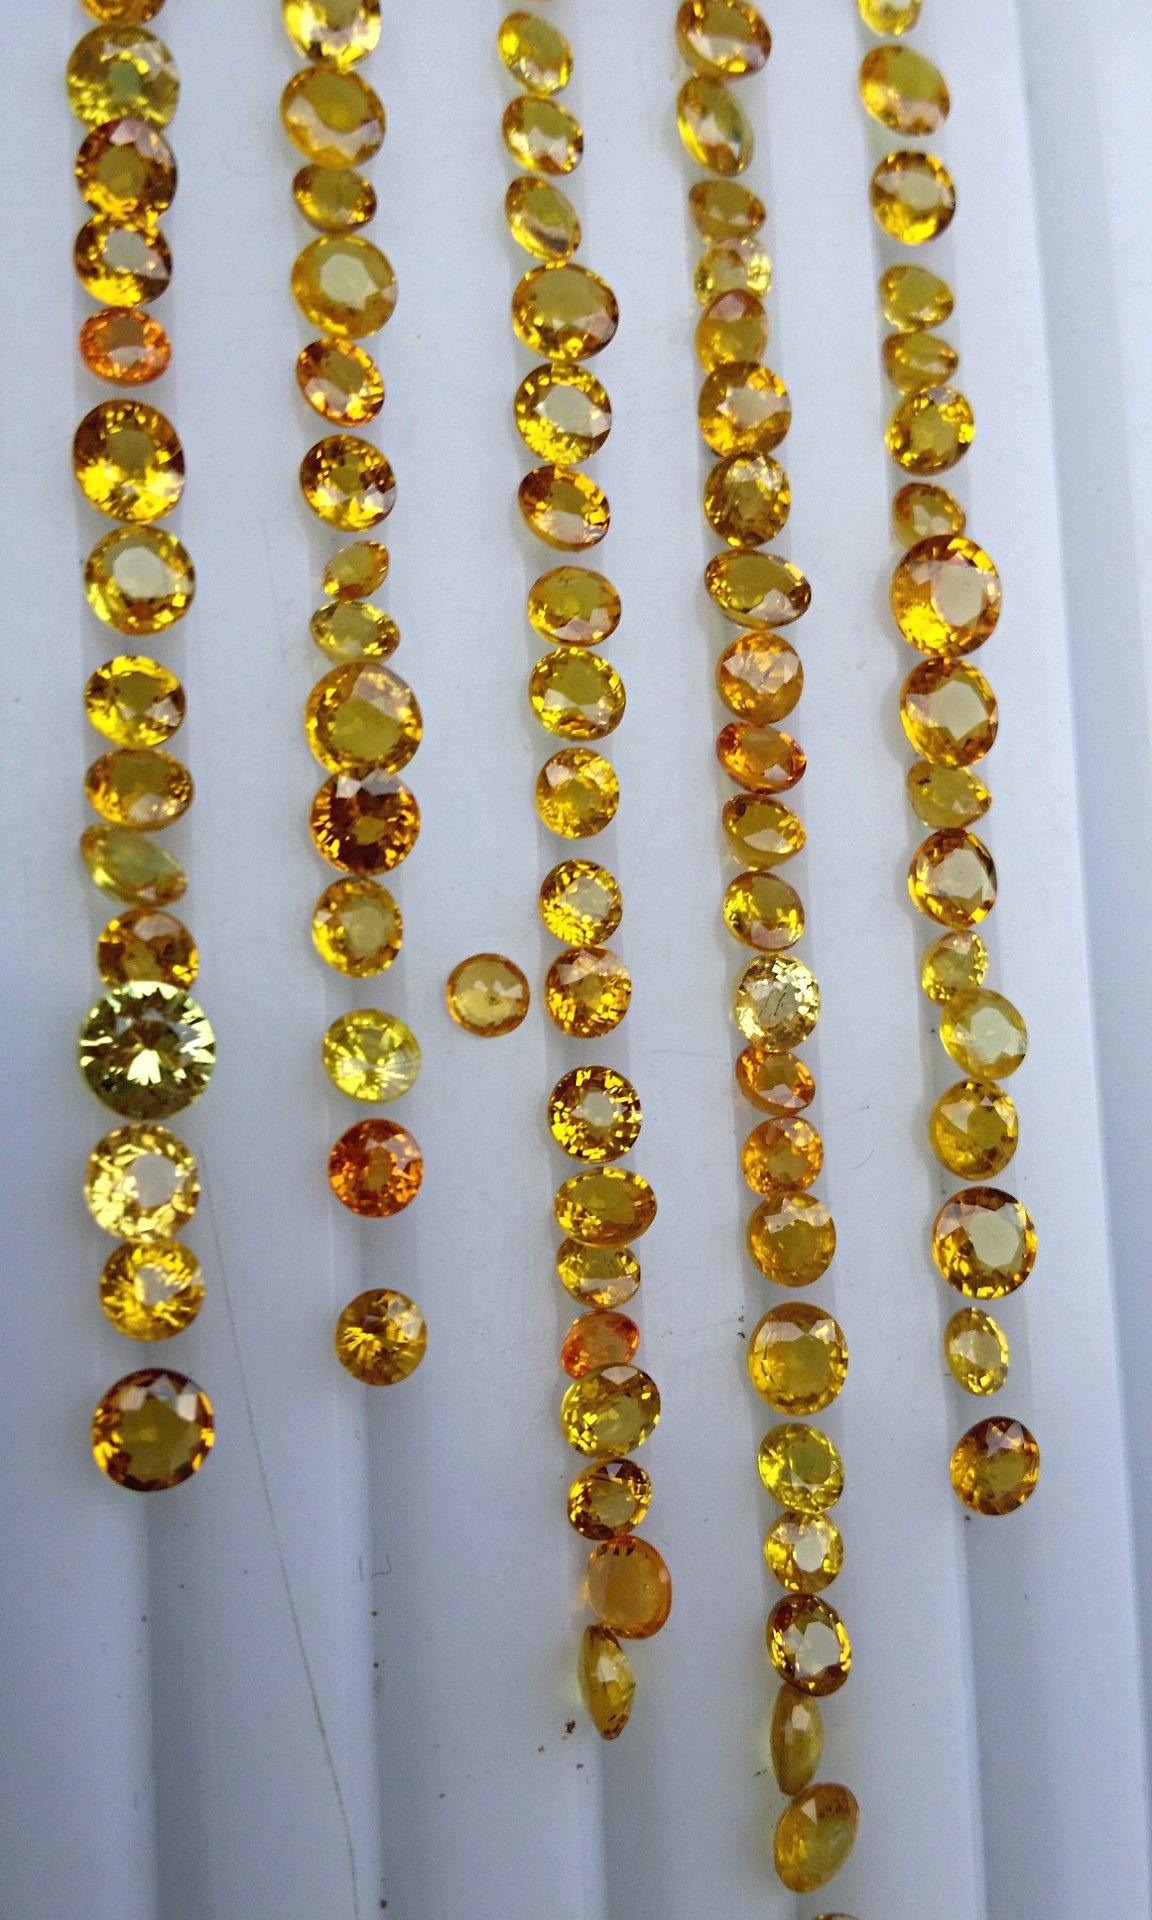 Corundum Gemstones is also called Sapphire